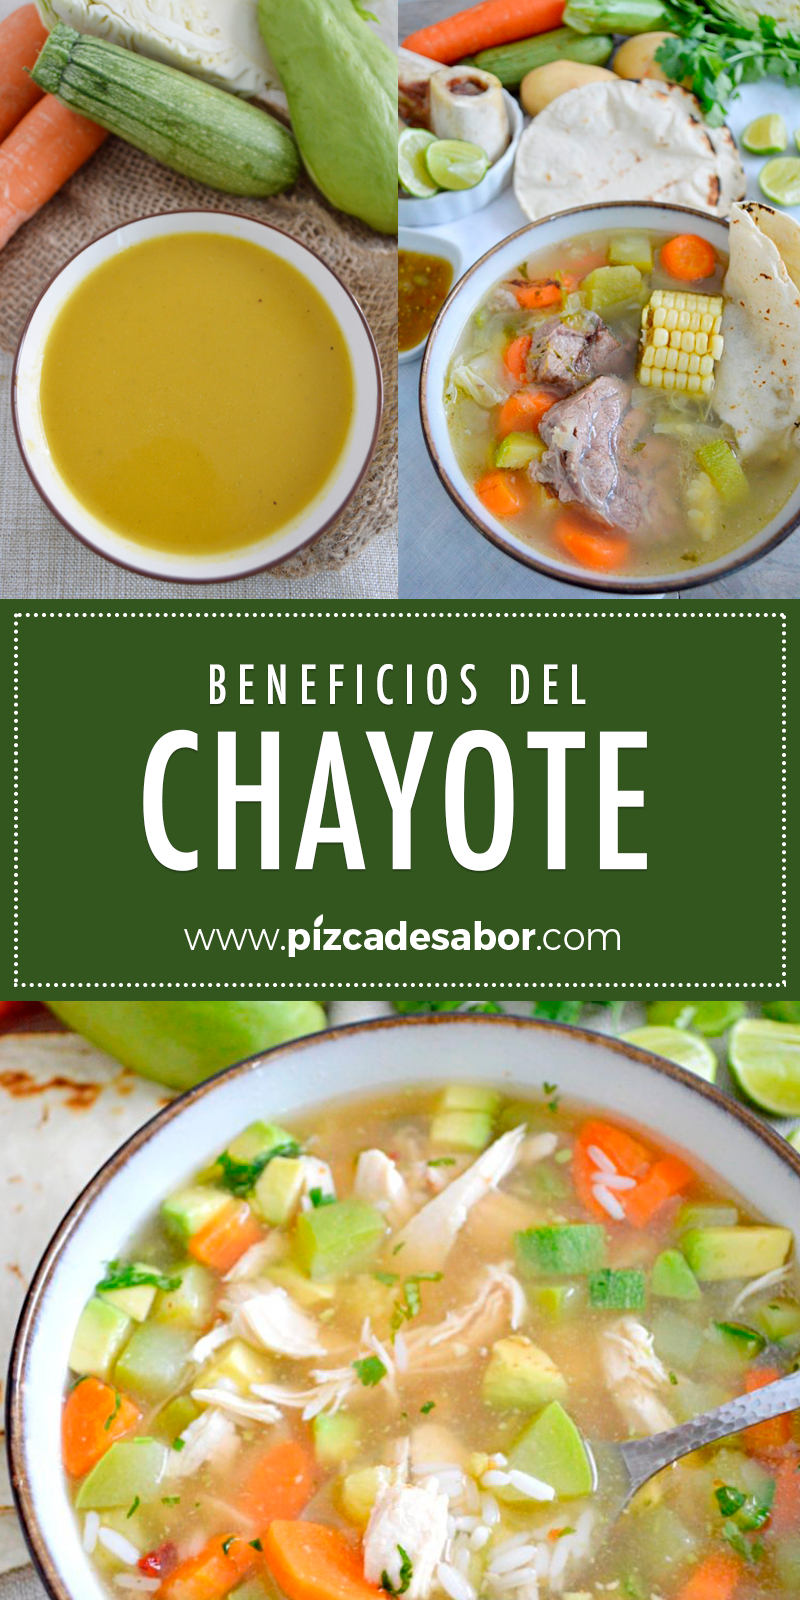 Beneficios del chayote www.pizcadesabor.com